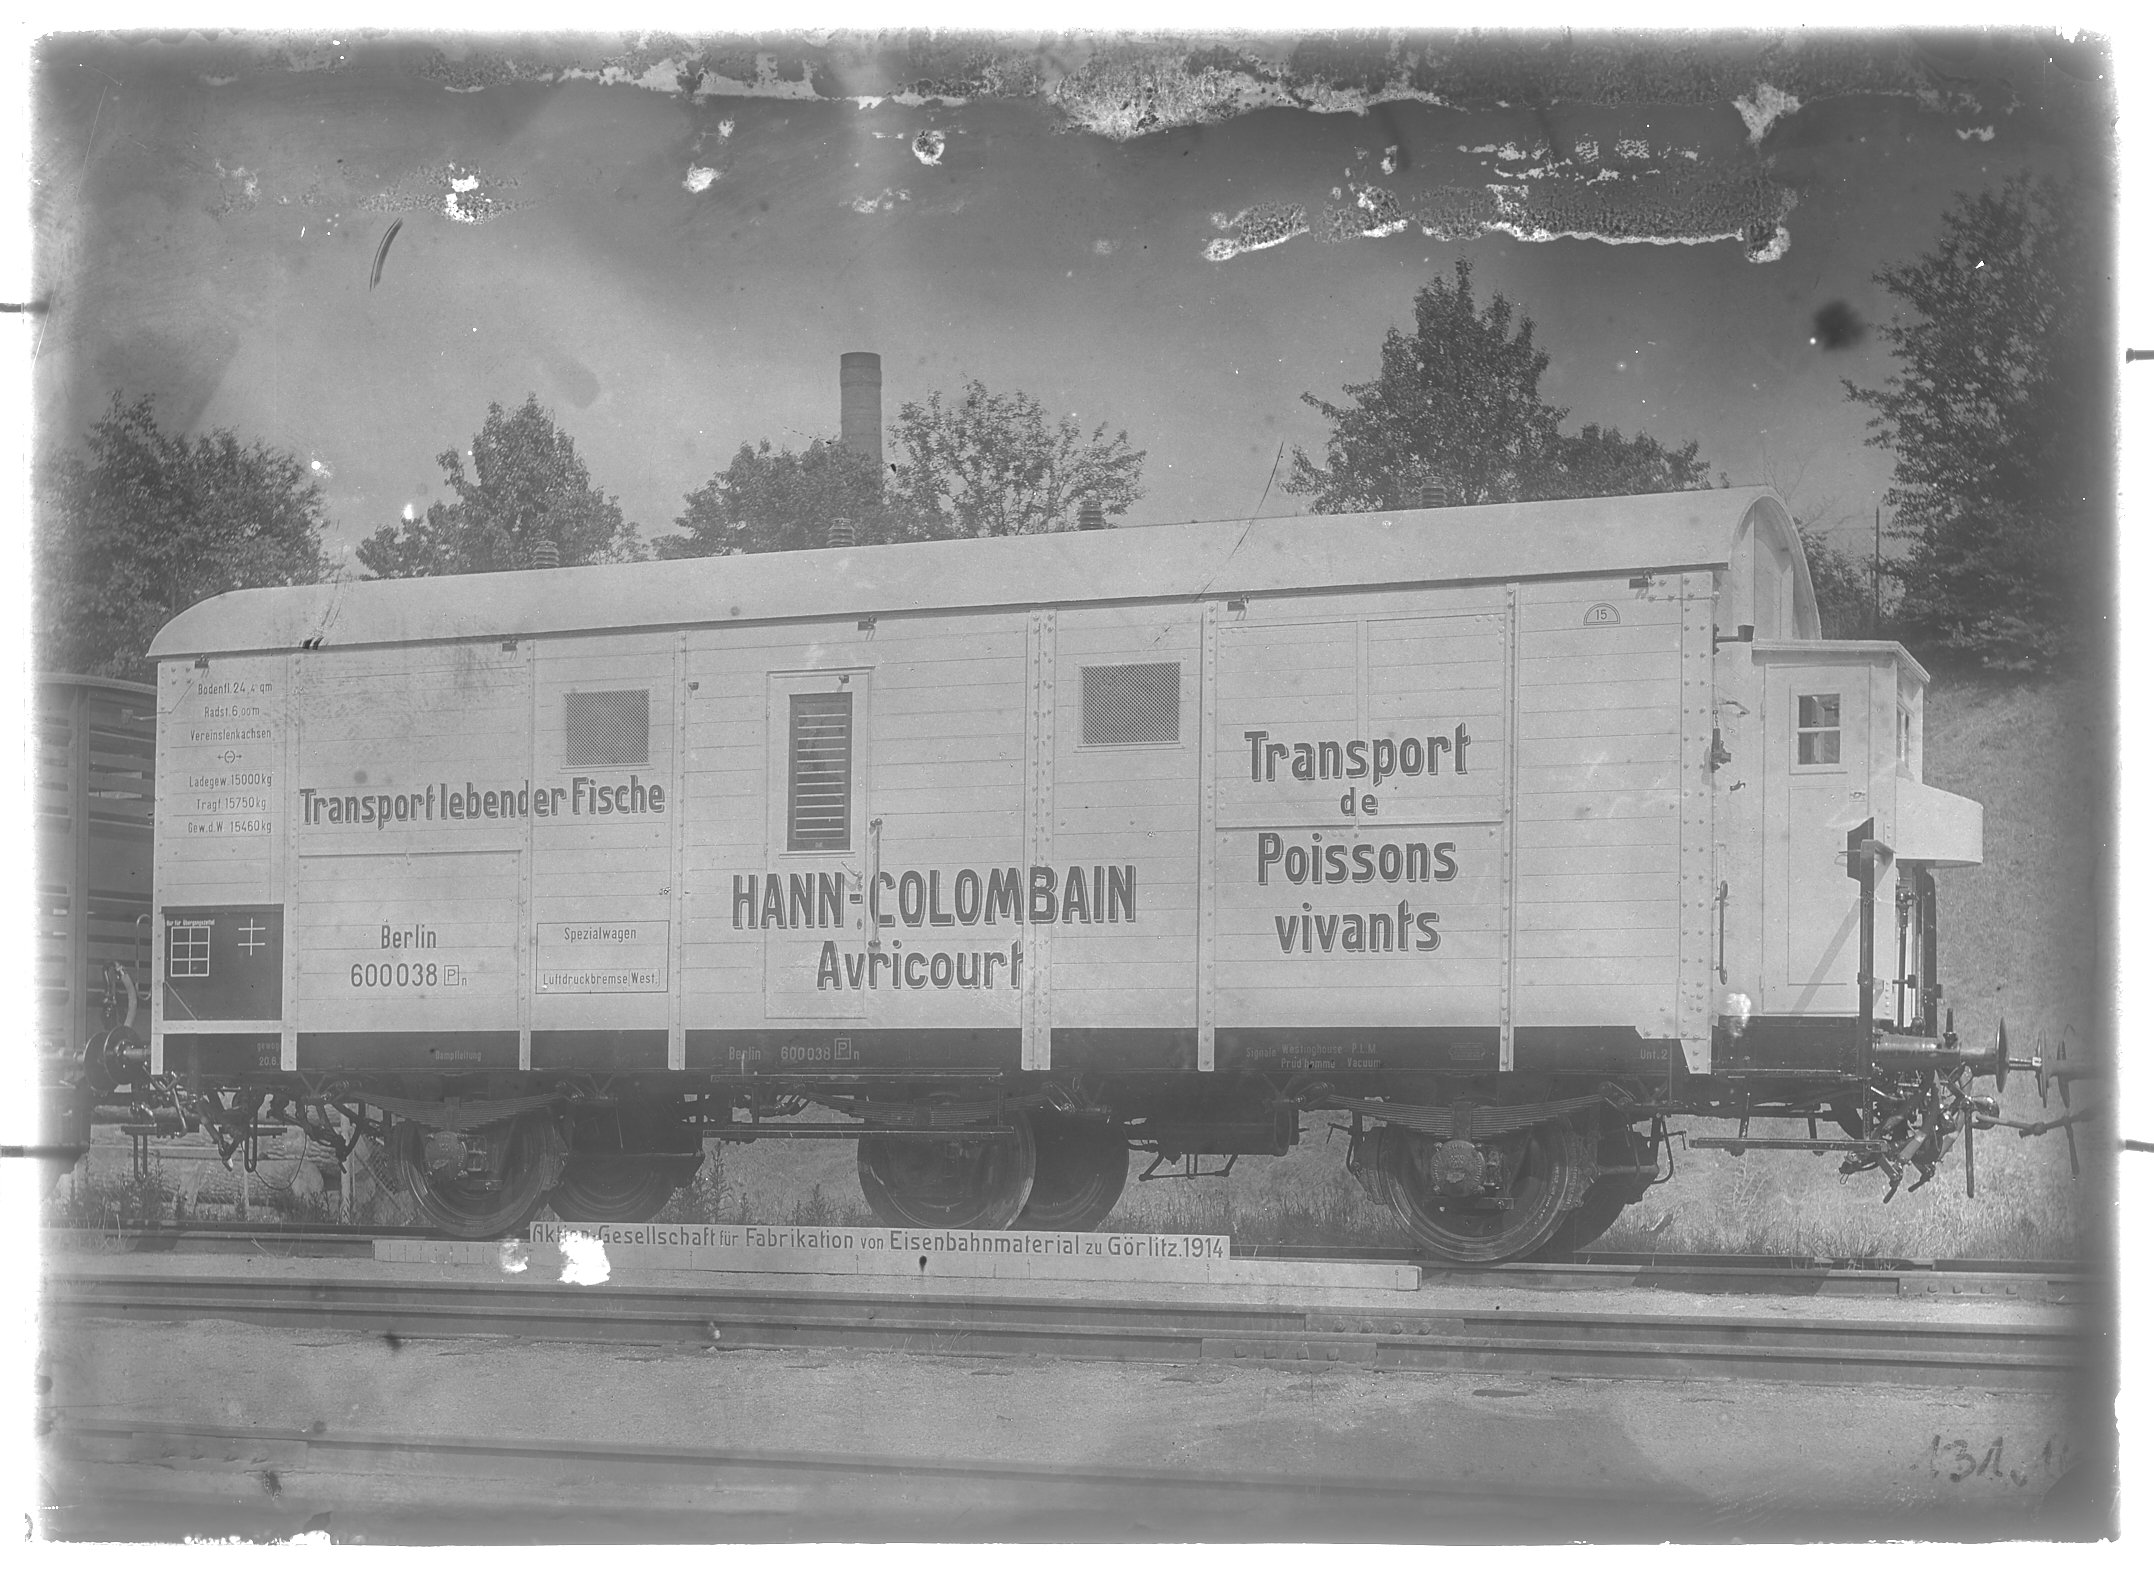 Fotografie: dreiachsiger gedeckter Güterwagen mit Bremserhaus, Gattung GnP (Schrägansicht), Spezialwagen zum Transport lebender Fische, 1914. Hann-Col (Verkehrsmuseum Dresden CC BY-NC-SA)